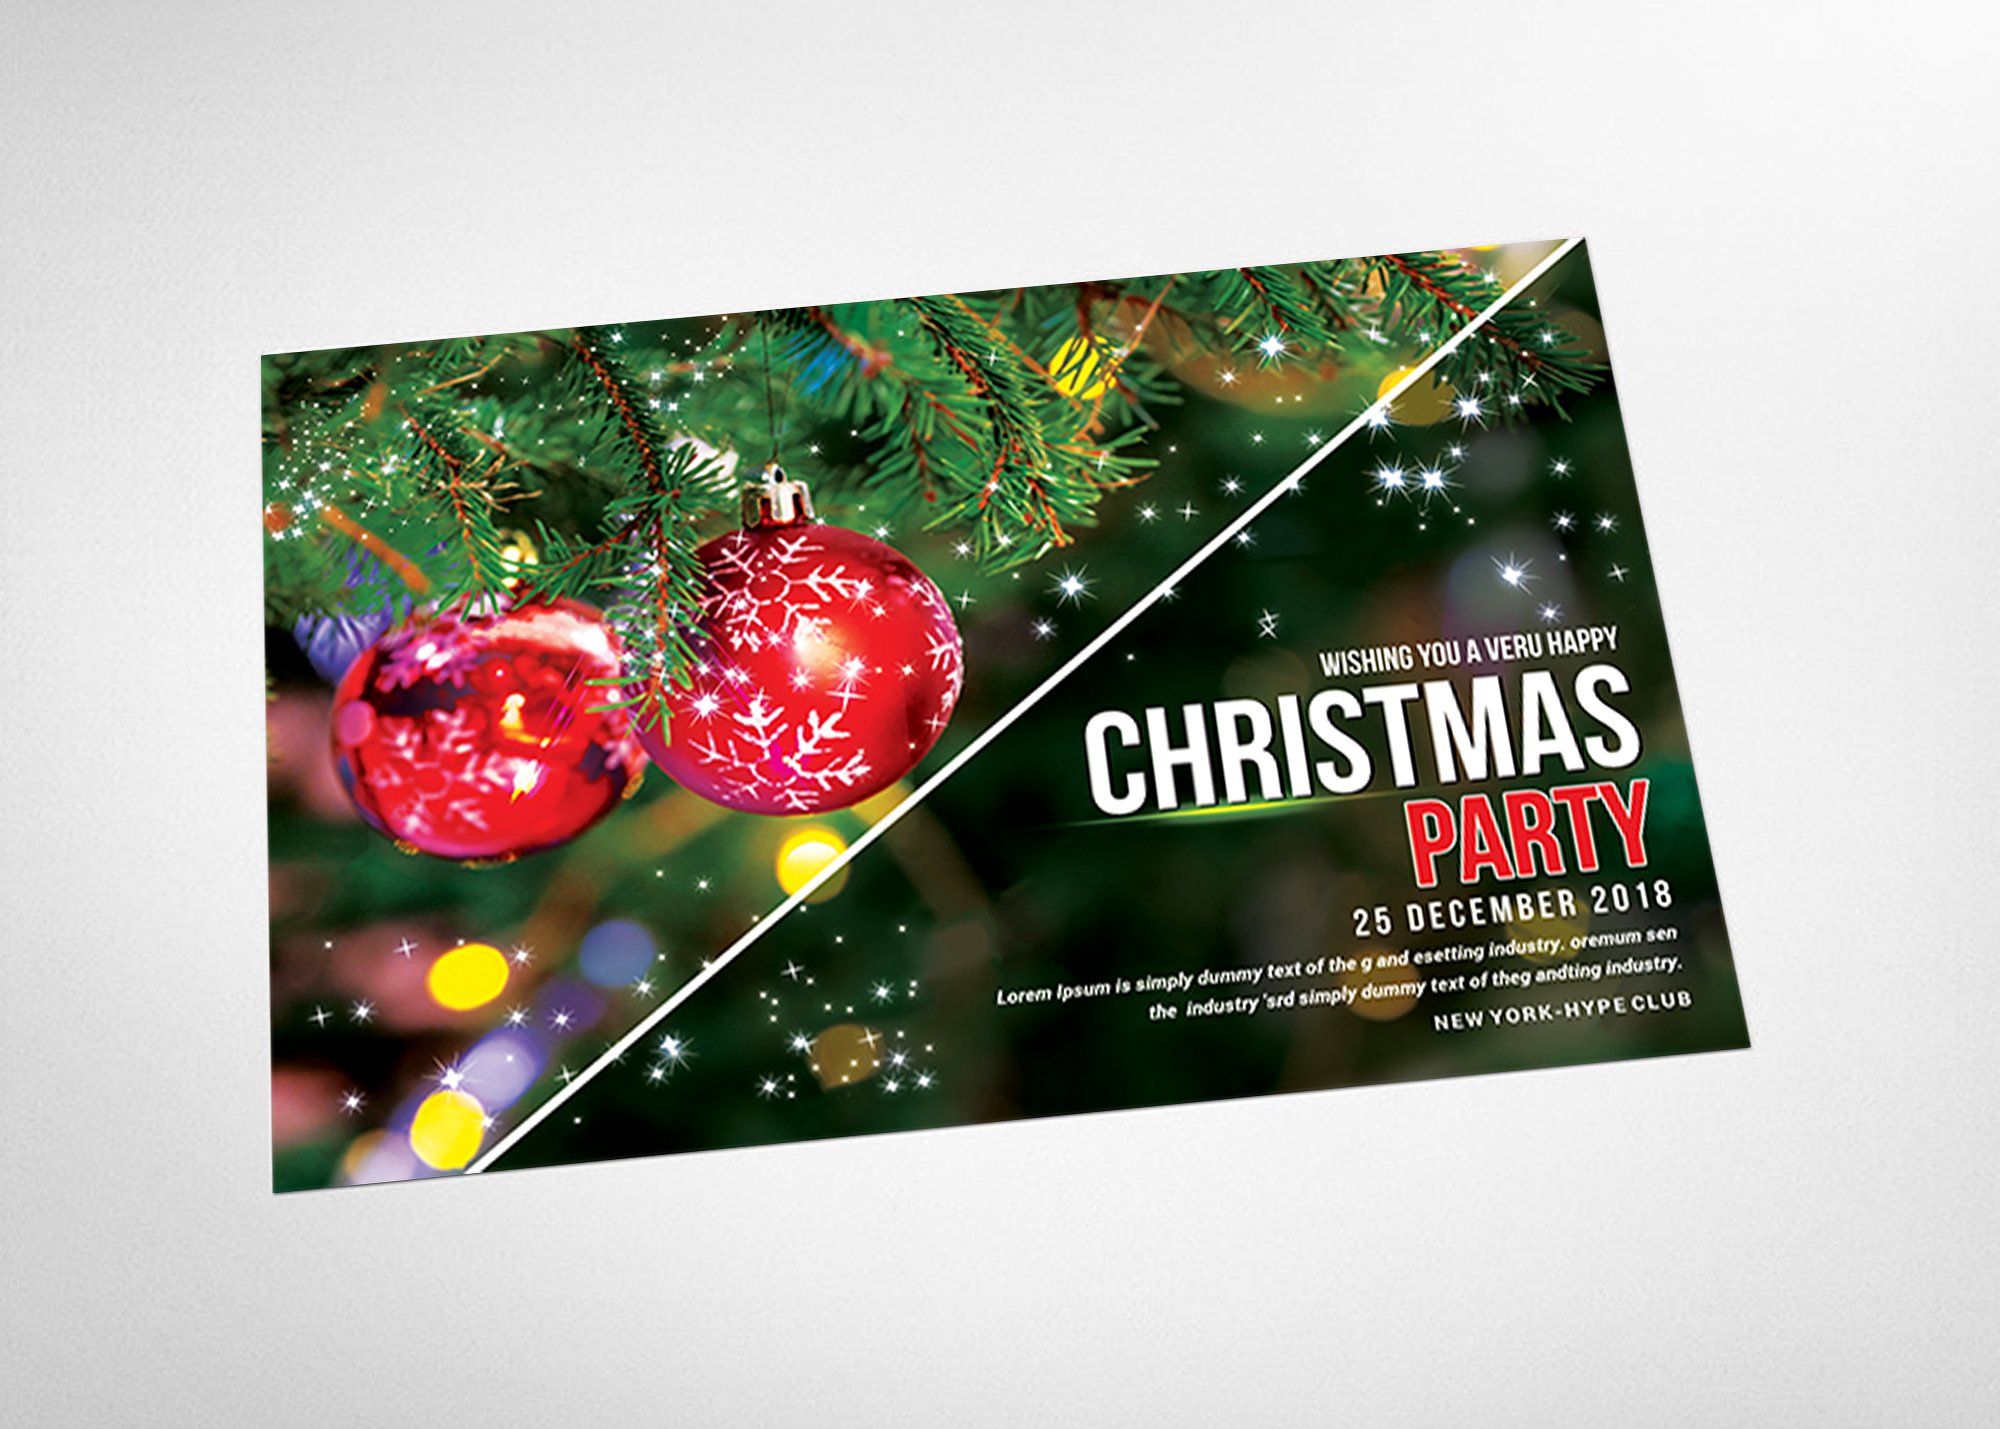 圣诞贺卡明信片模板设计 Christmas – Postcard Templates插图(2)